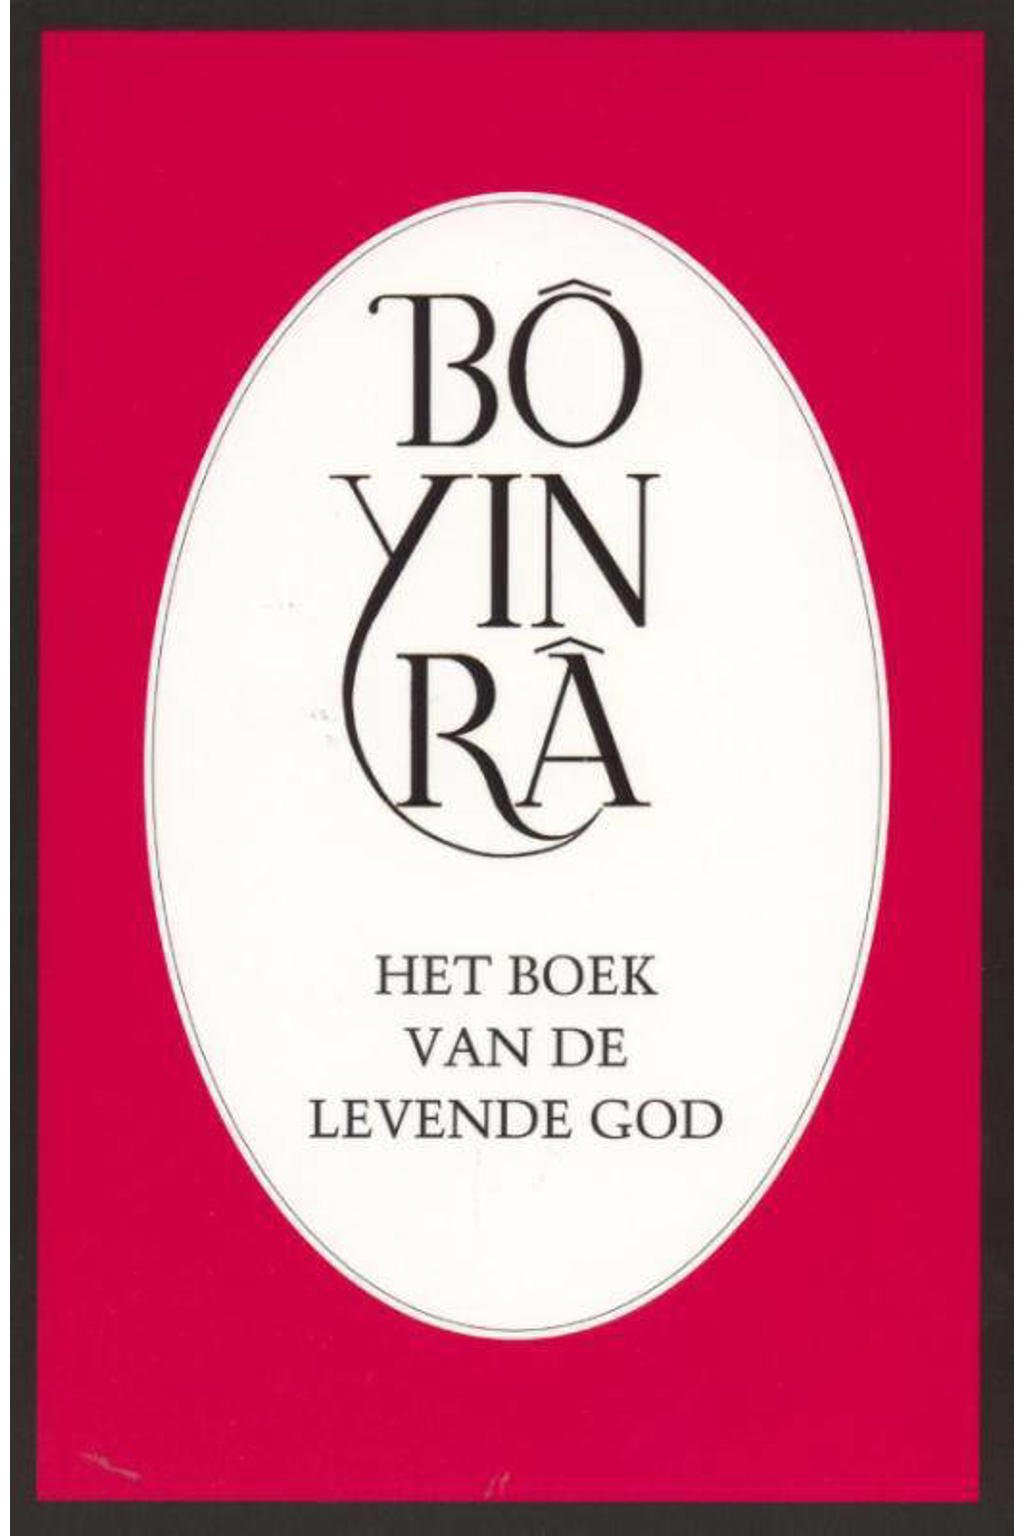 Het boek van de levende God - Bo Yin Ra